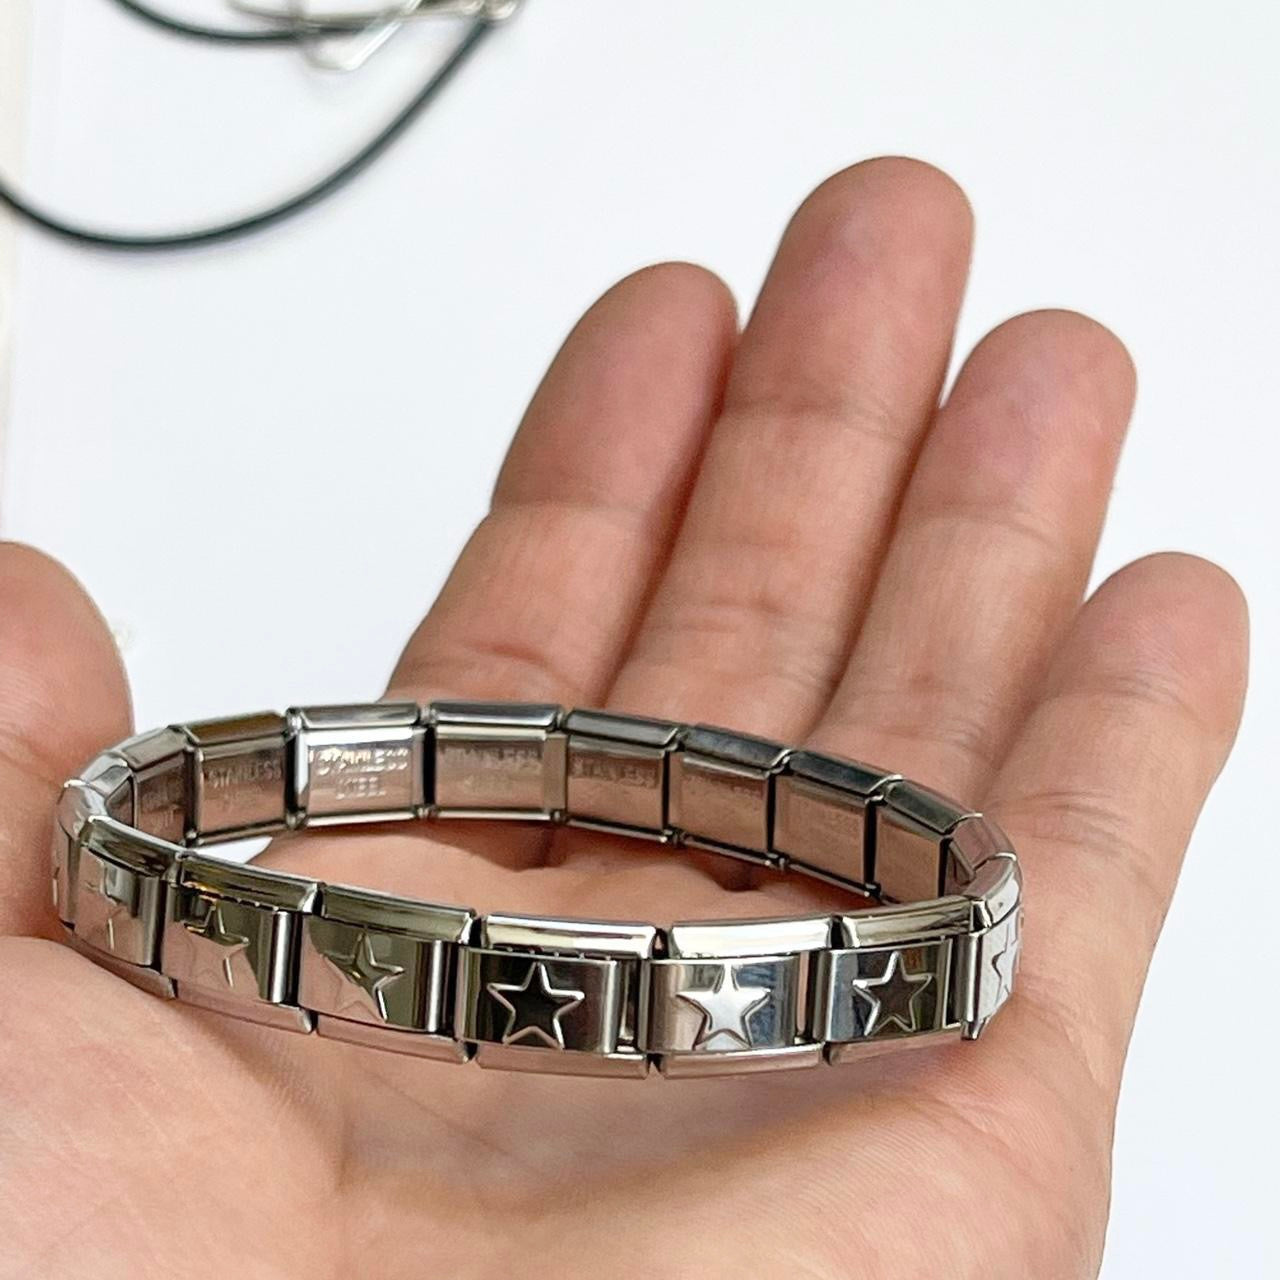 Italian Charm Bracelet - Stainless Steel Bracelet